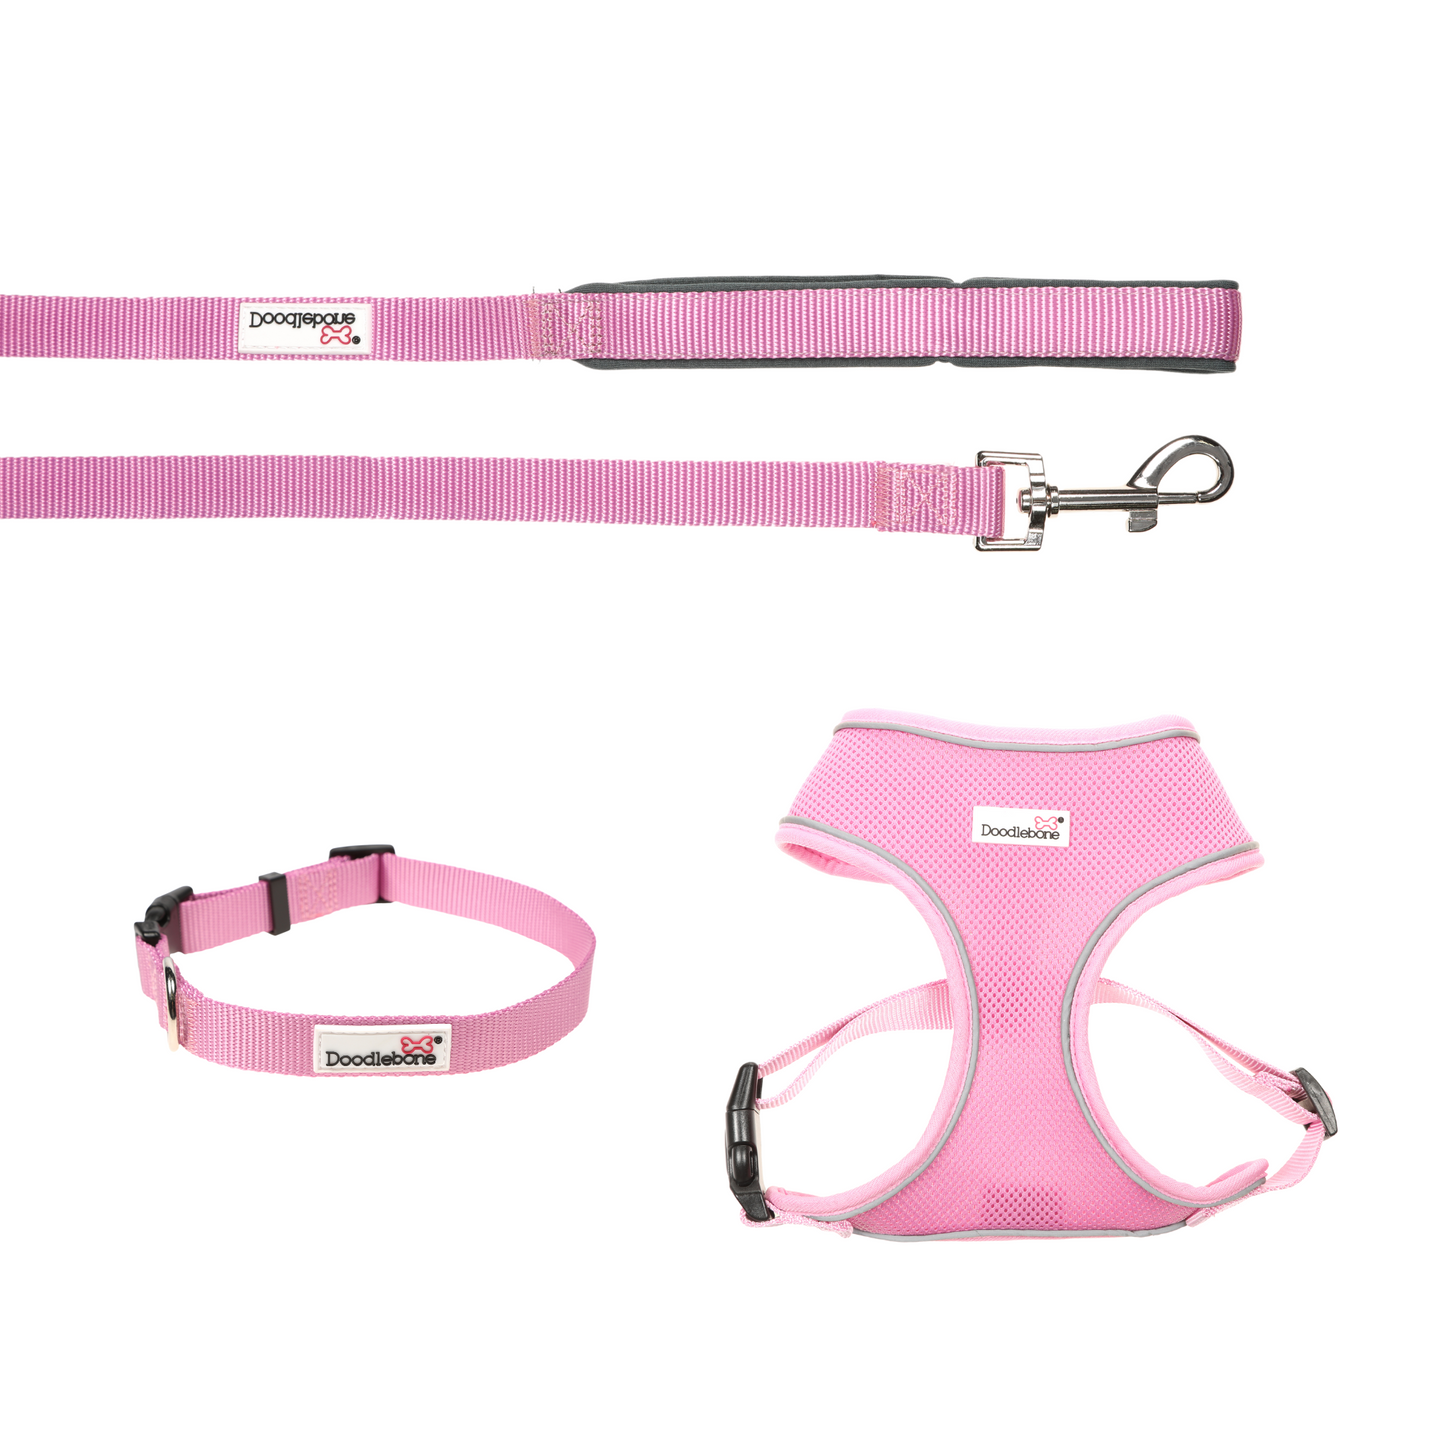 Doodlebone Originals Airmesh Bundle Set Dog Lead, Collar & Harness Blush Light Pink